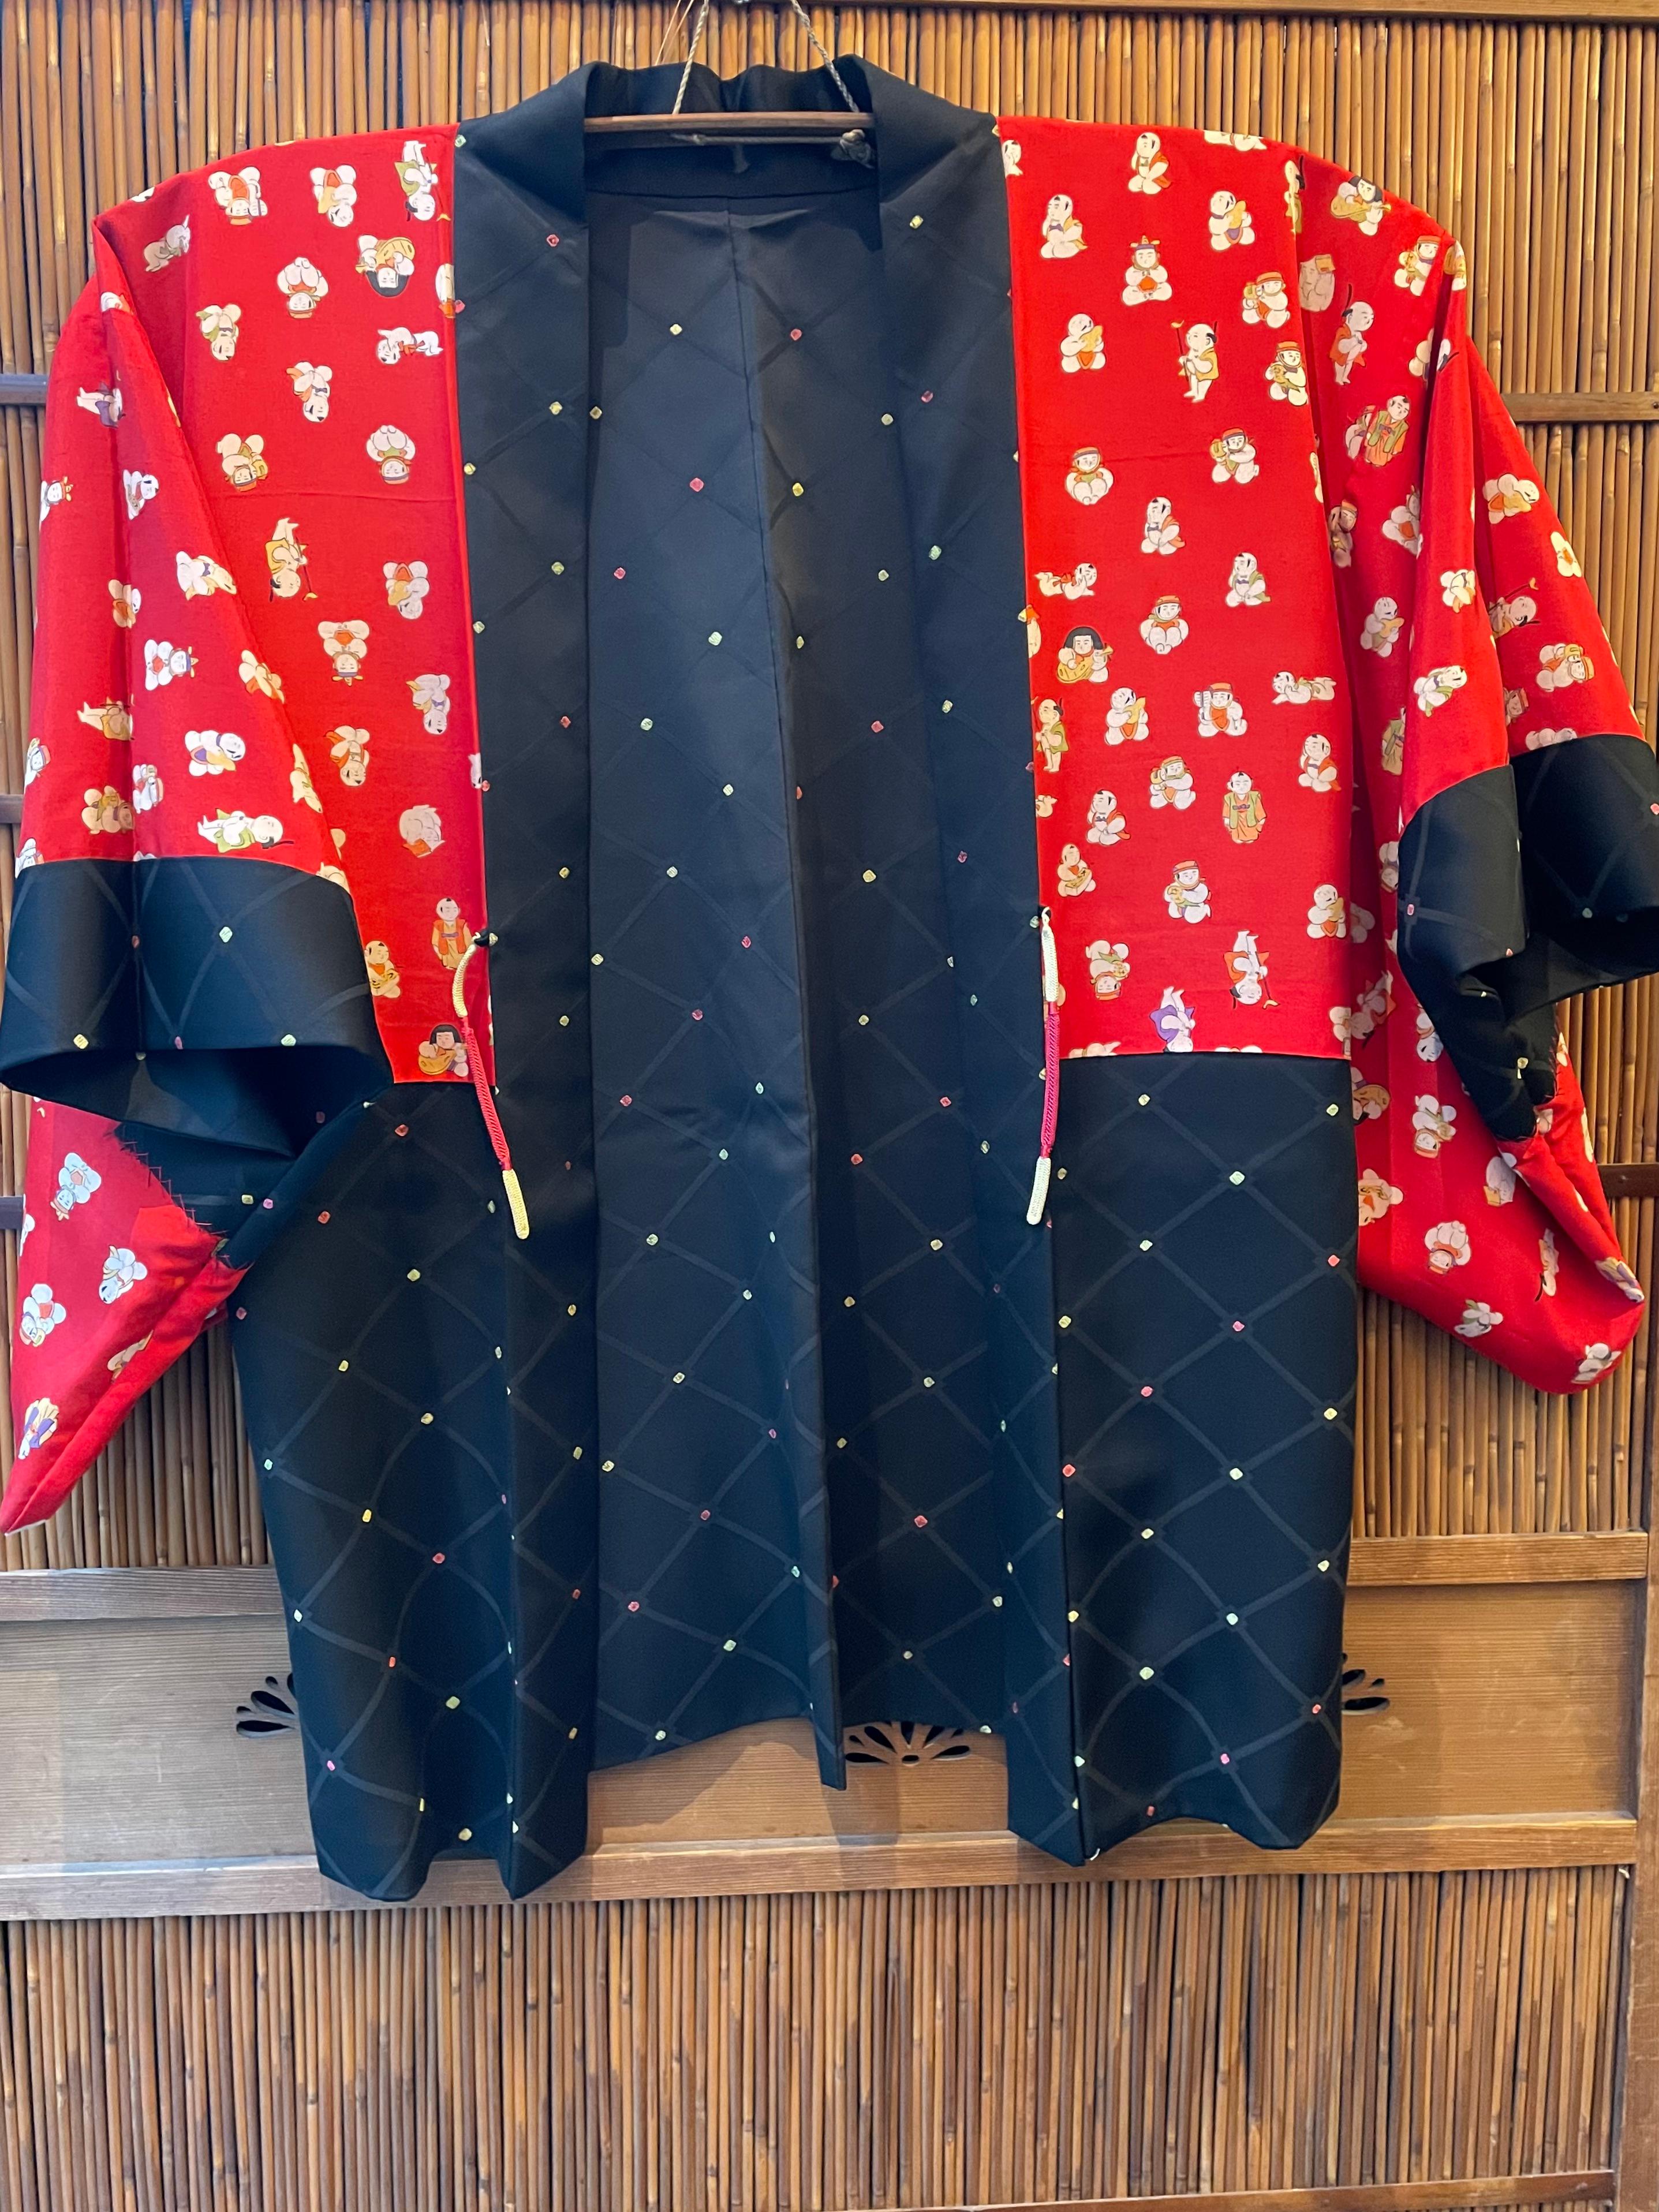 Il s'agit d'une veste en soie fabriquée au Japon.
Il a été fabriqué à l'époque Showa, dans les années 1960.

Le haori est une veste traditionnelle japonaise qui descend jusqu'aux hanches ou aux cuisses et qui se porte par-dessus un kimono.